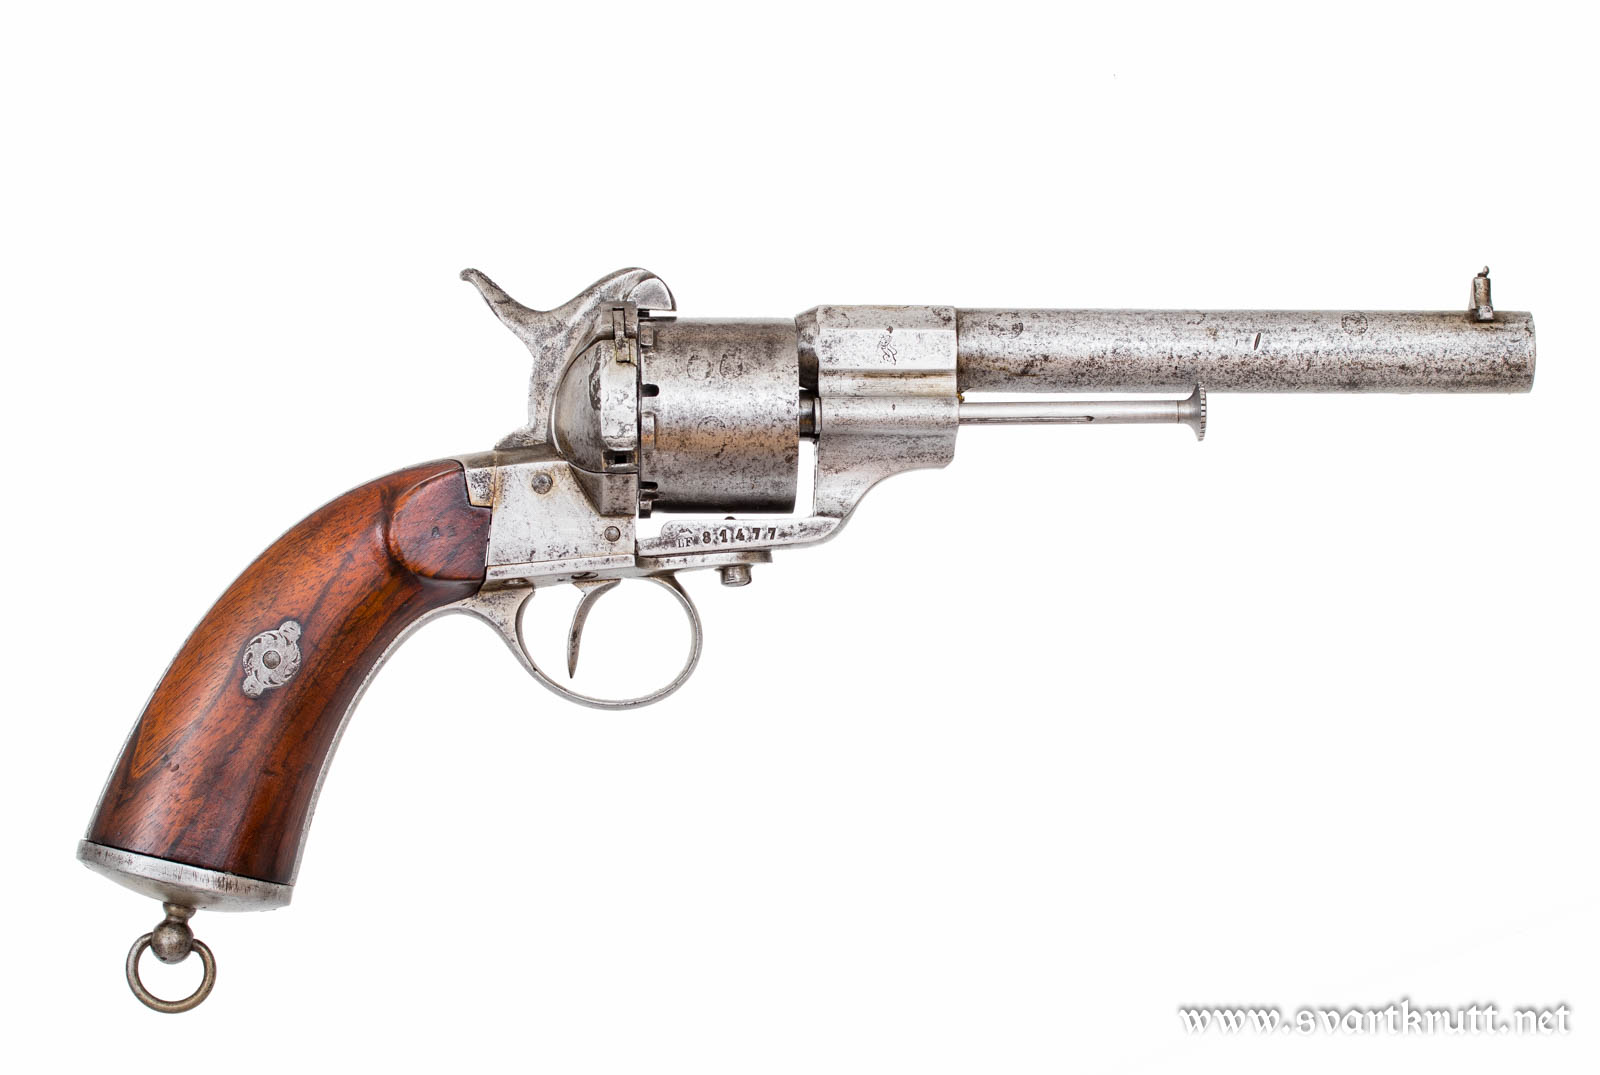 Slik så M/1864-revolveren ut før den fikk forsterkningsskinnen i 1898.